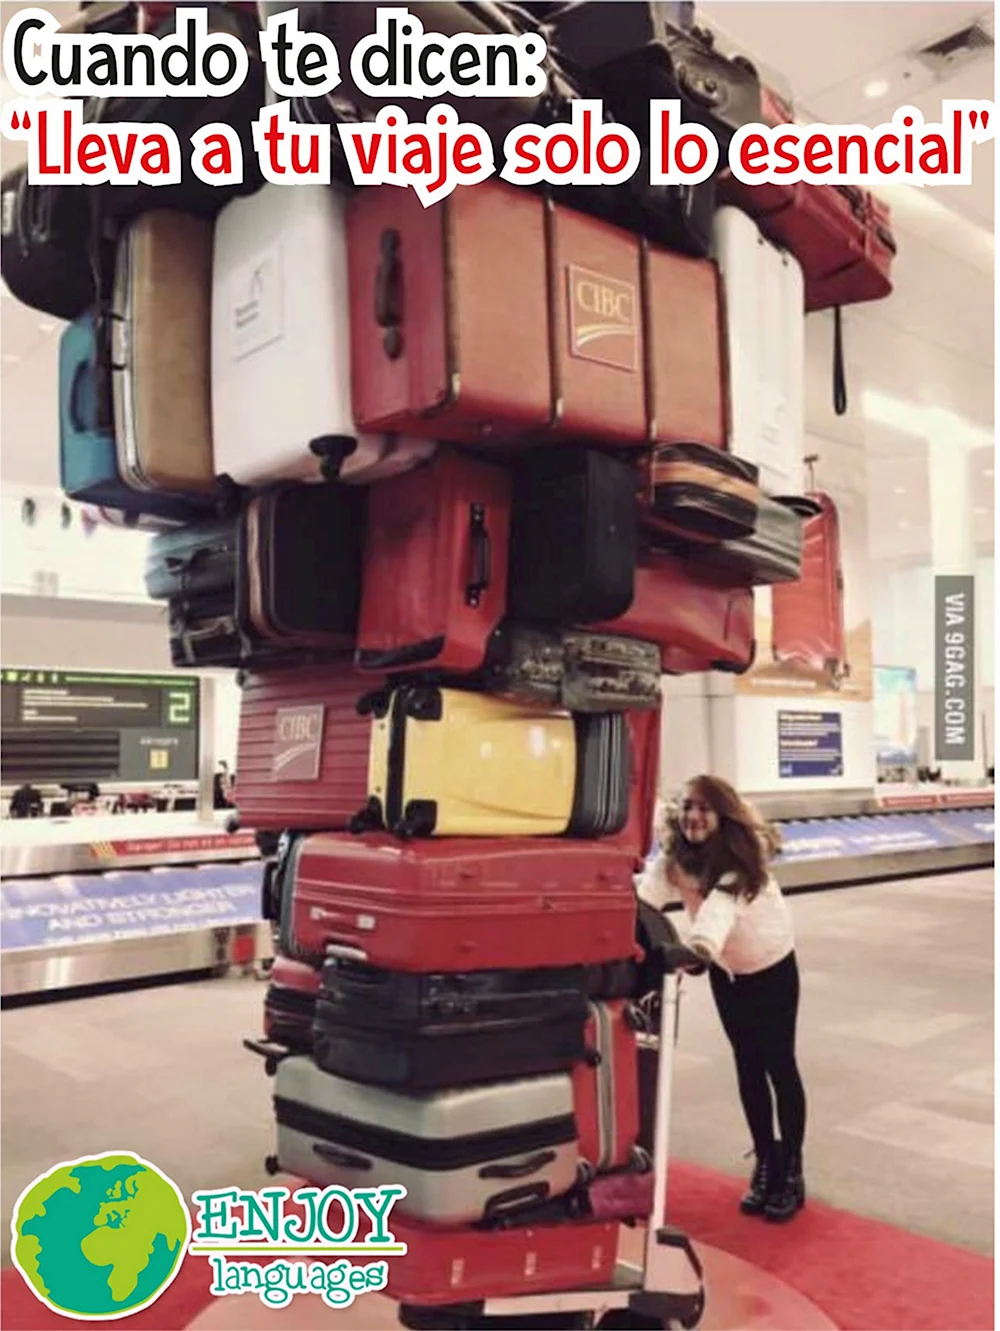 Девушка с кучей чемоданов